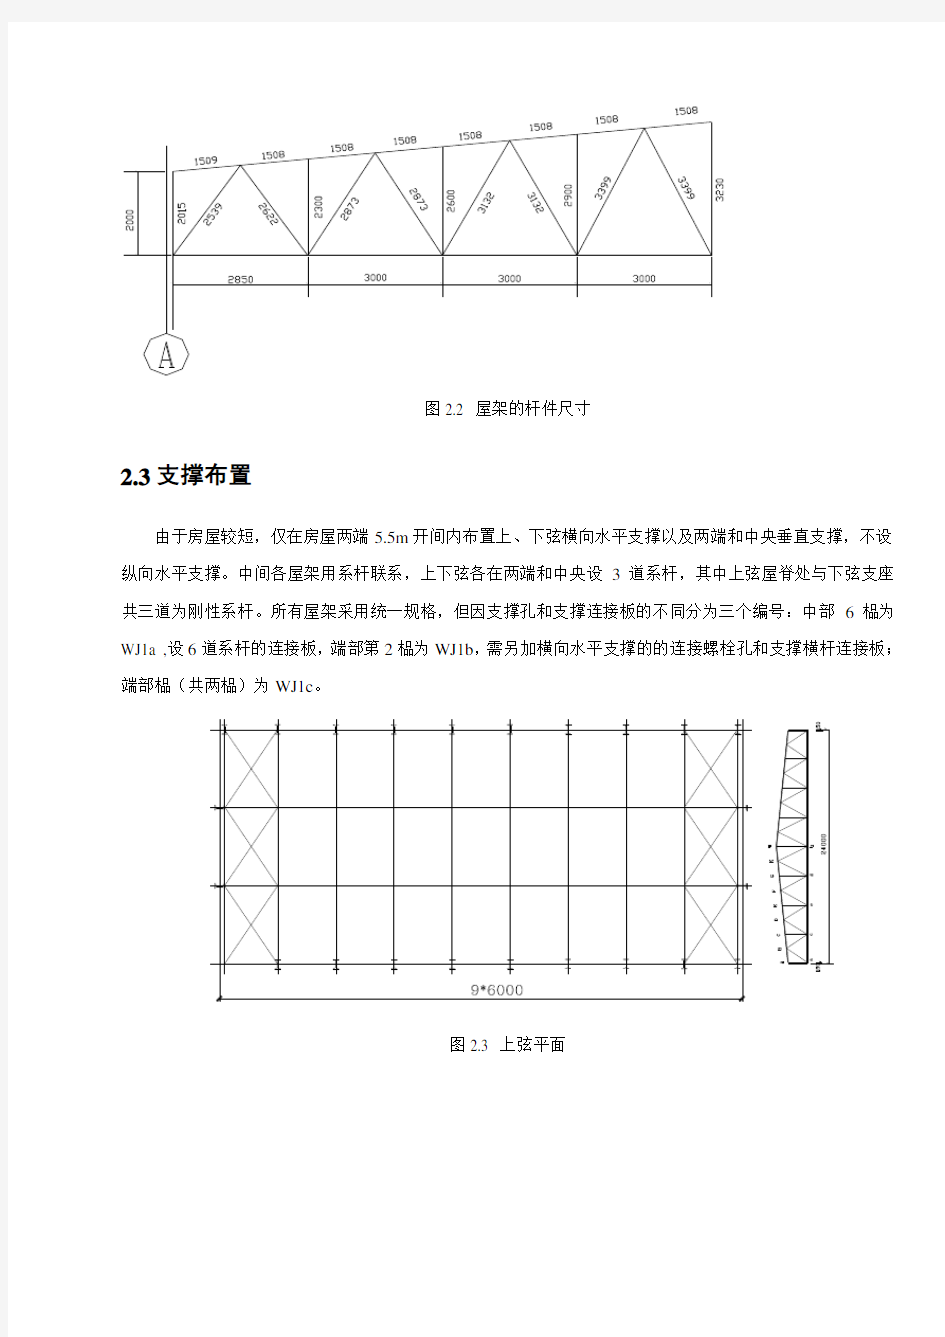 钢结构梯形屋架课程设计计算书(绝对完整)